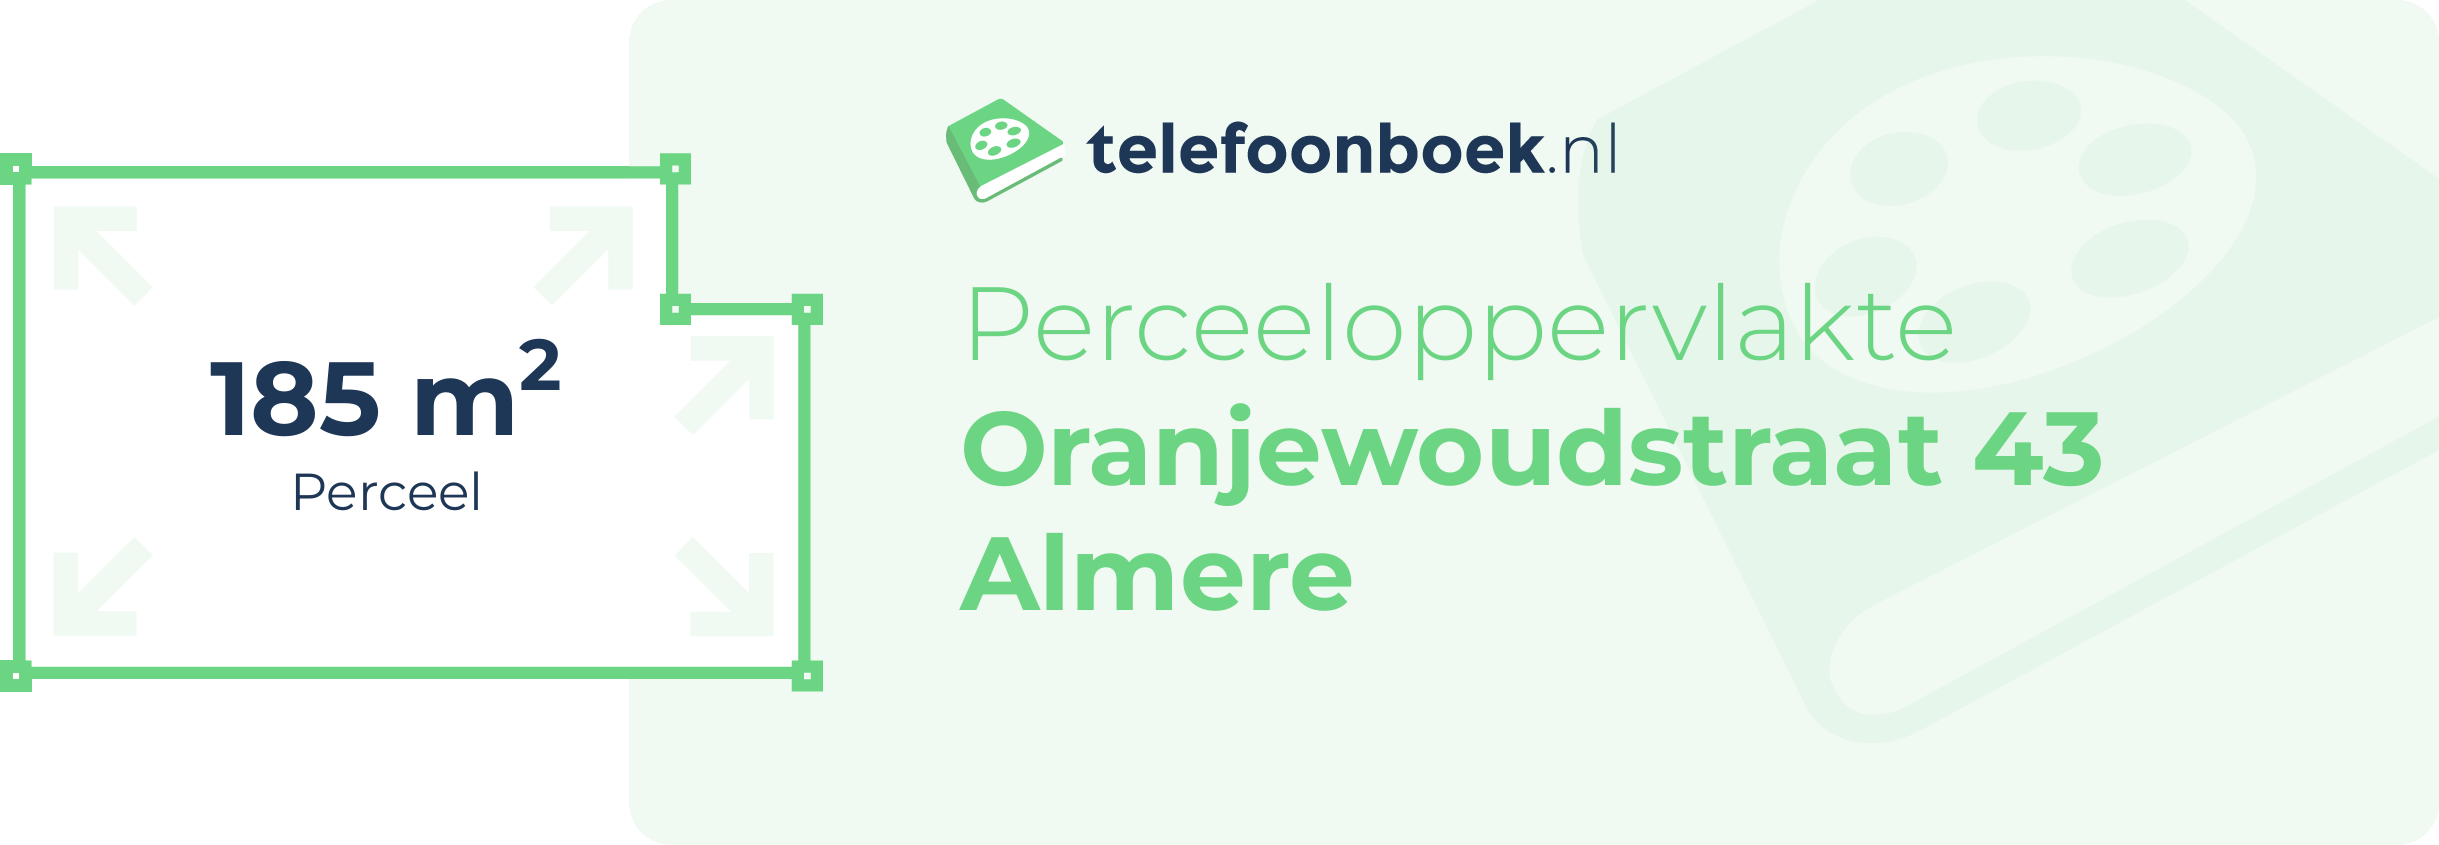 Perceeloppervlakte Oranjewoudstraat 43 Almere